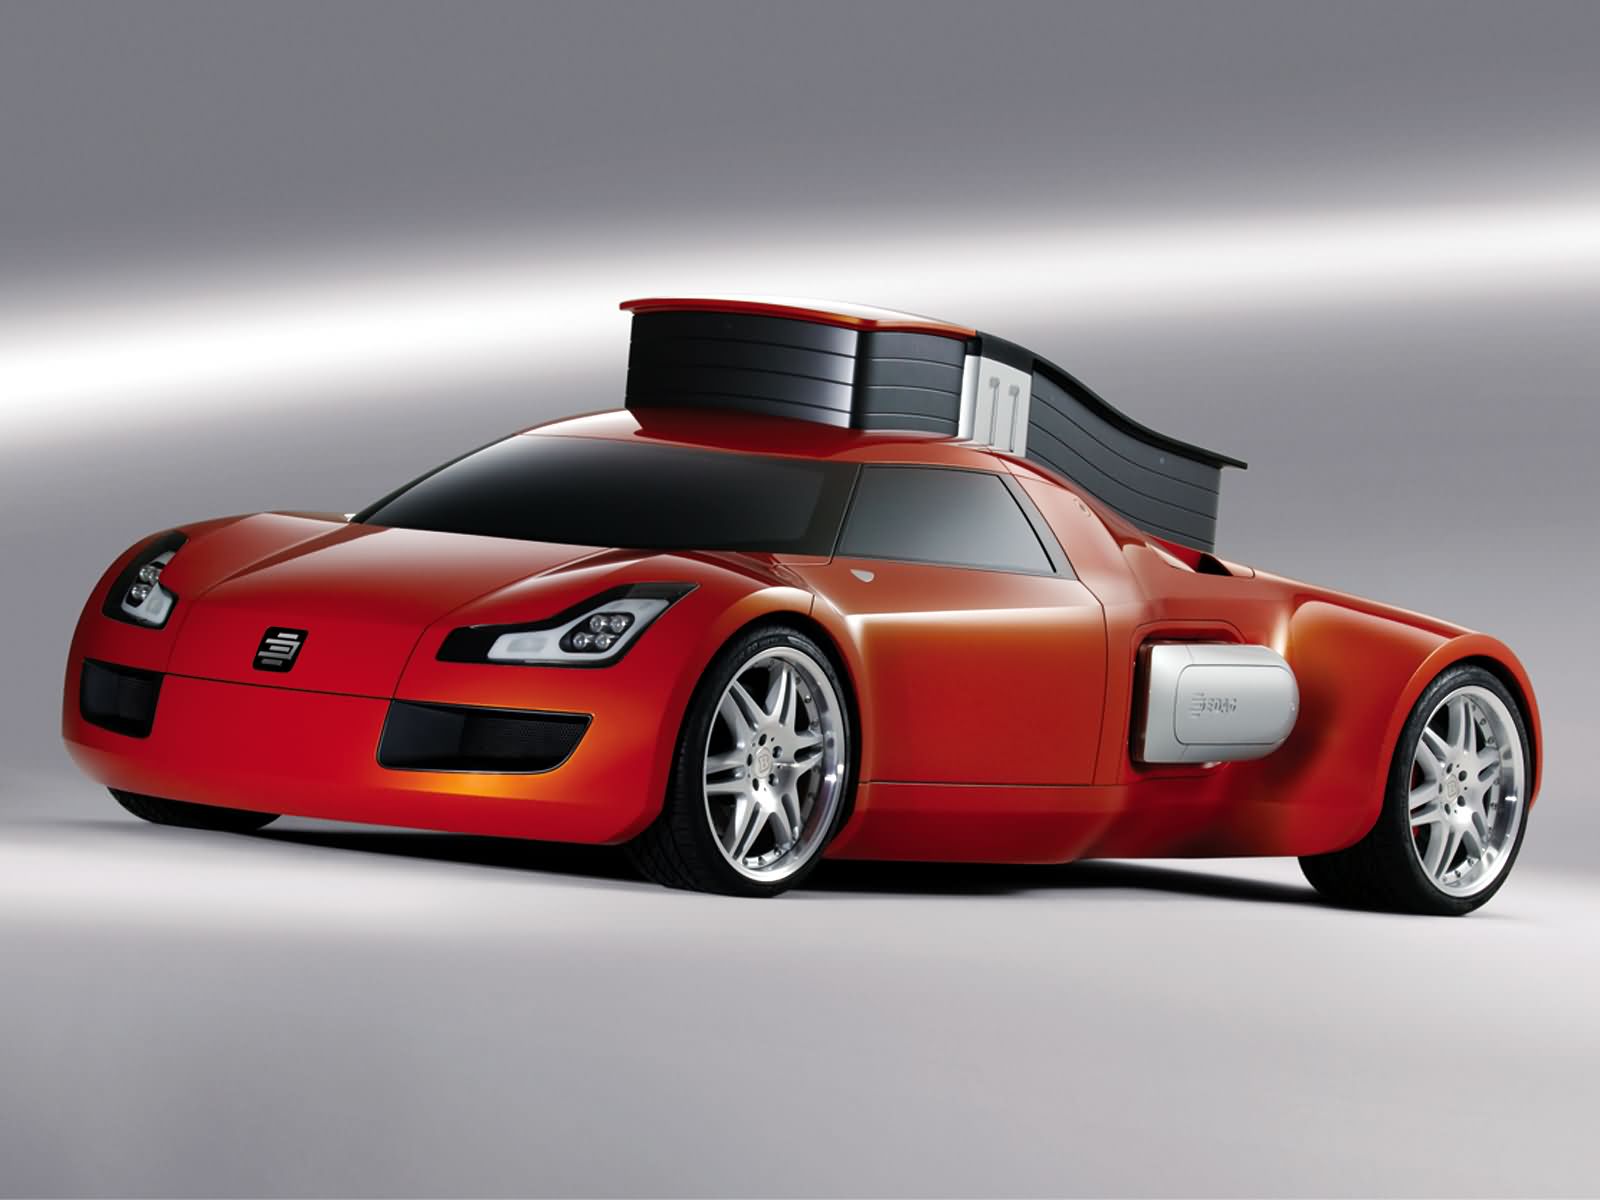 2004, Edag, Genx, Concept, Supercar Wallpaper